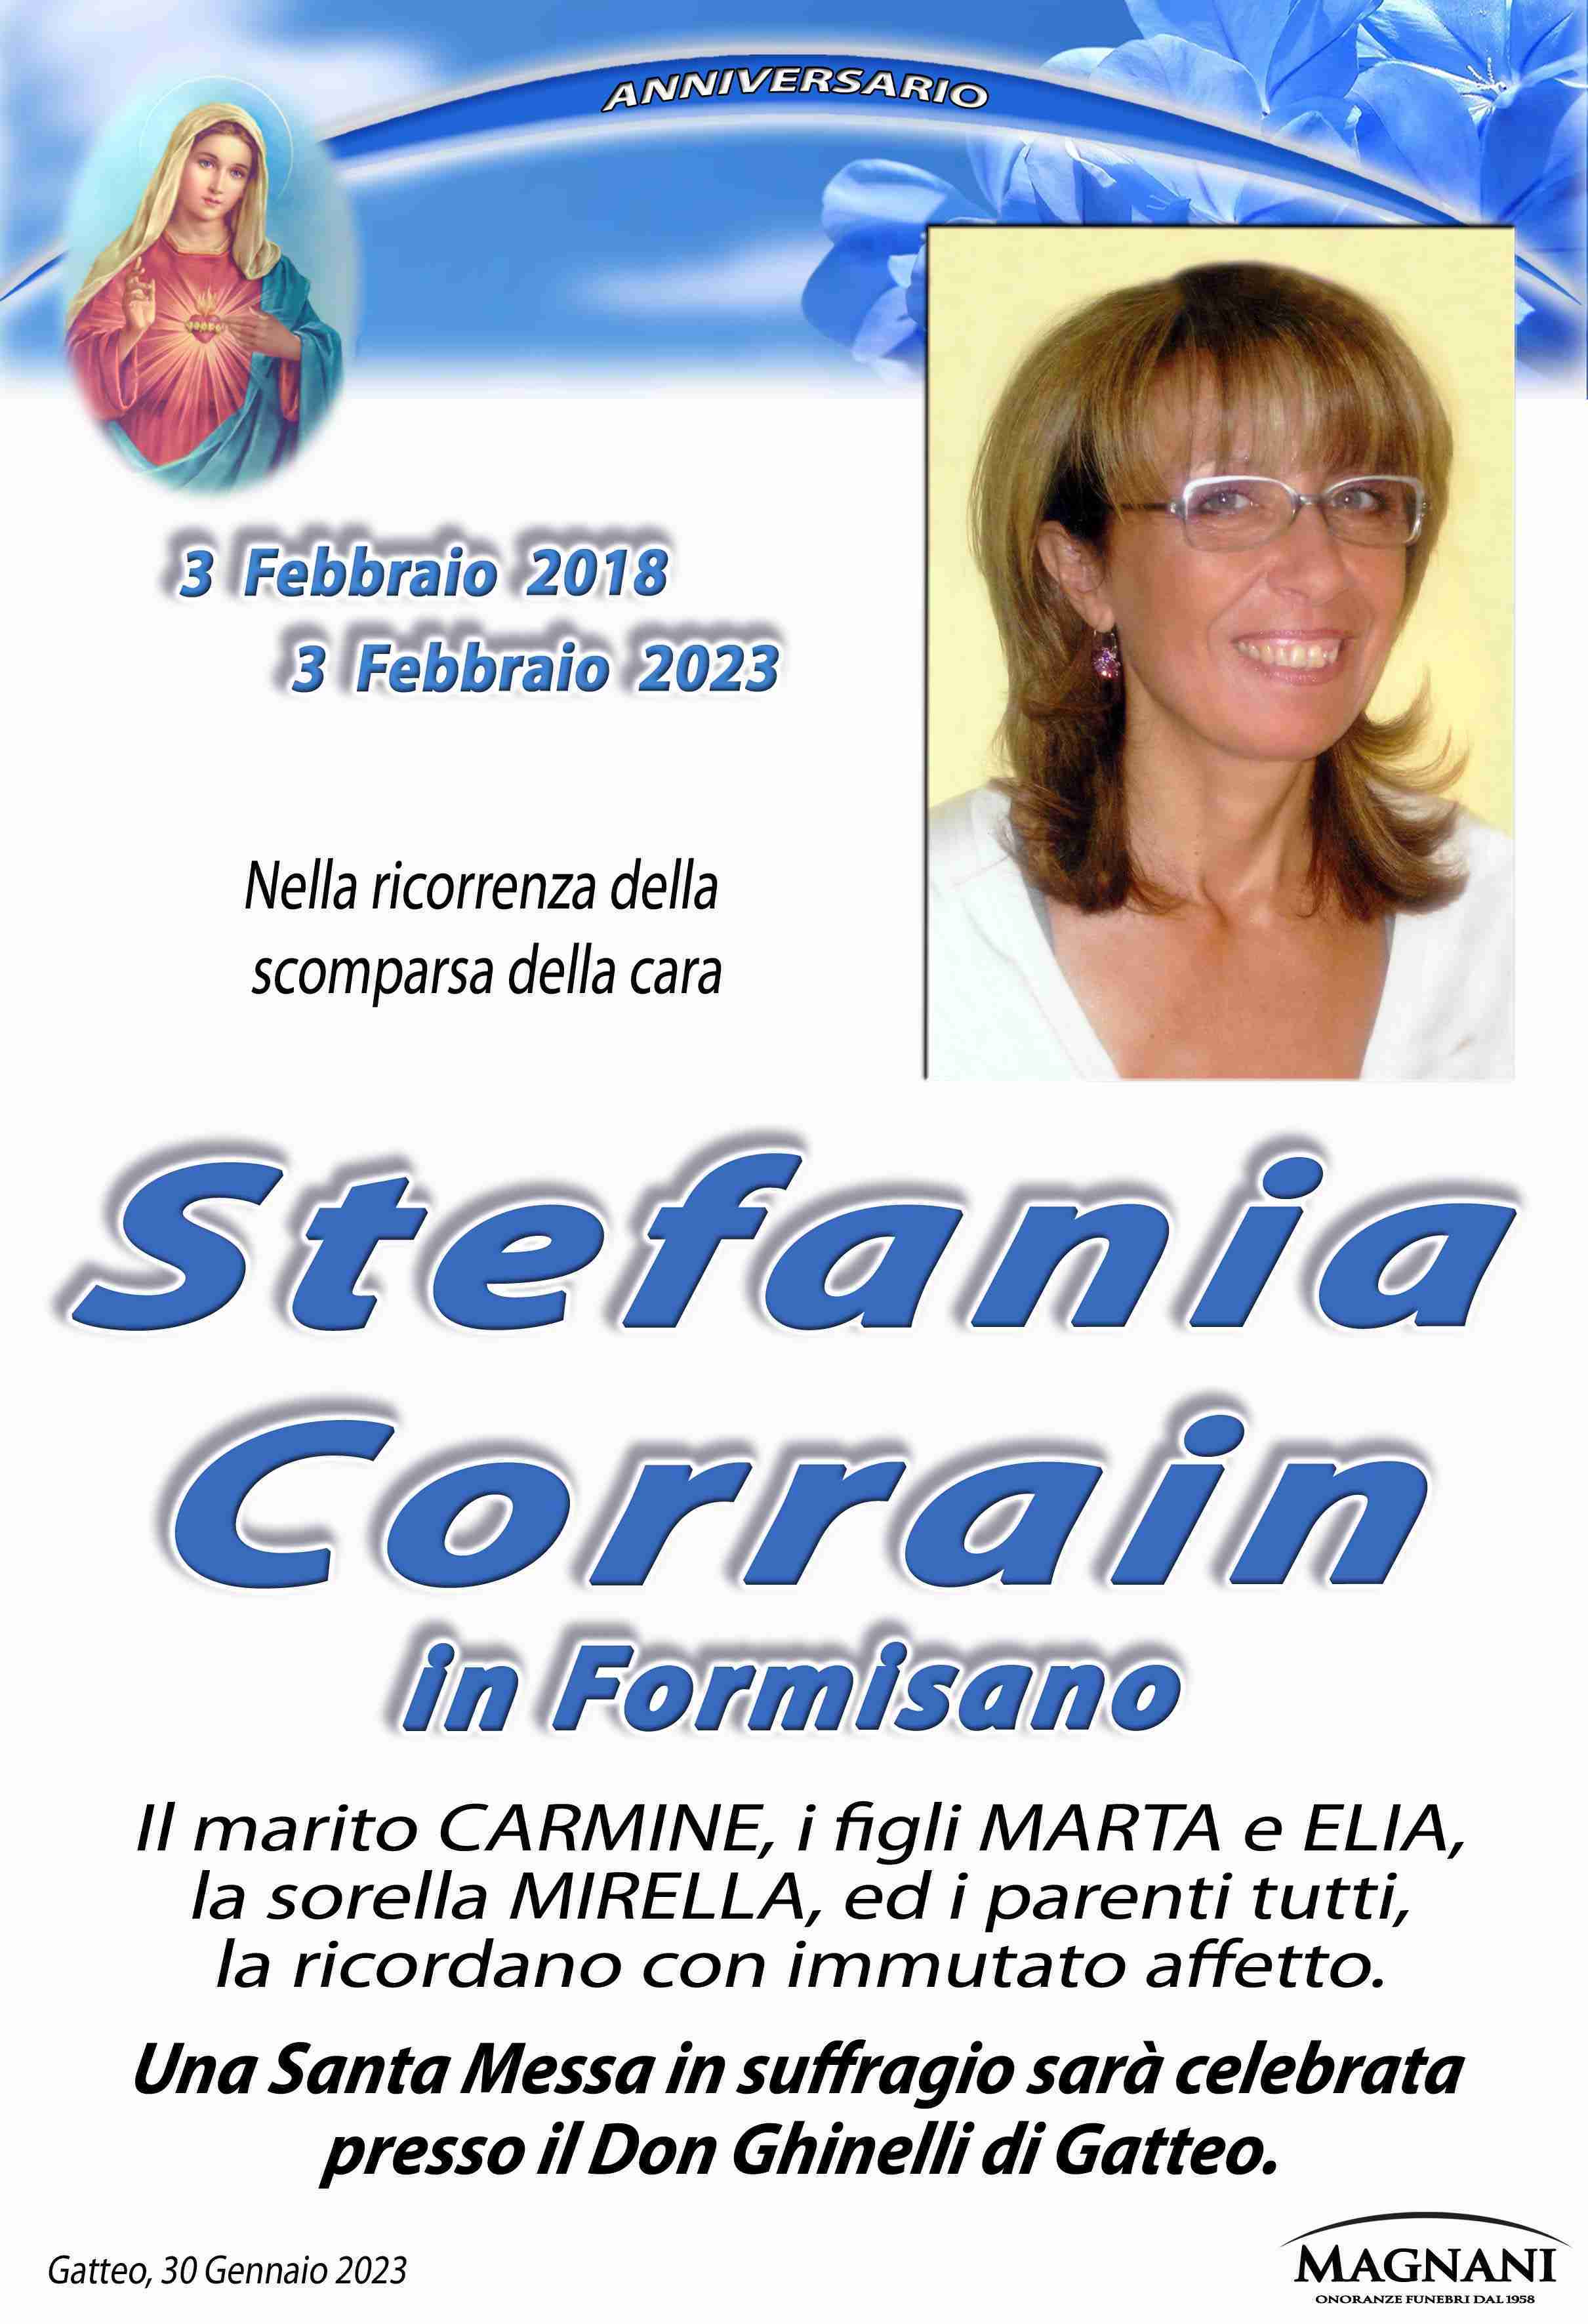 Stefania Corrain